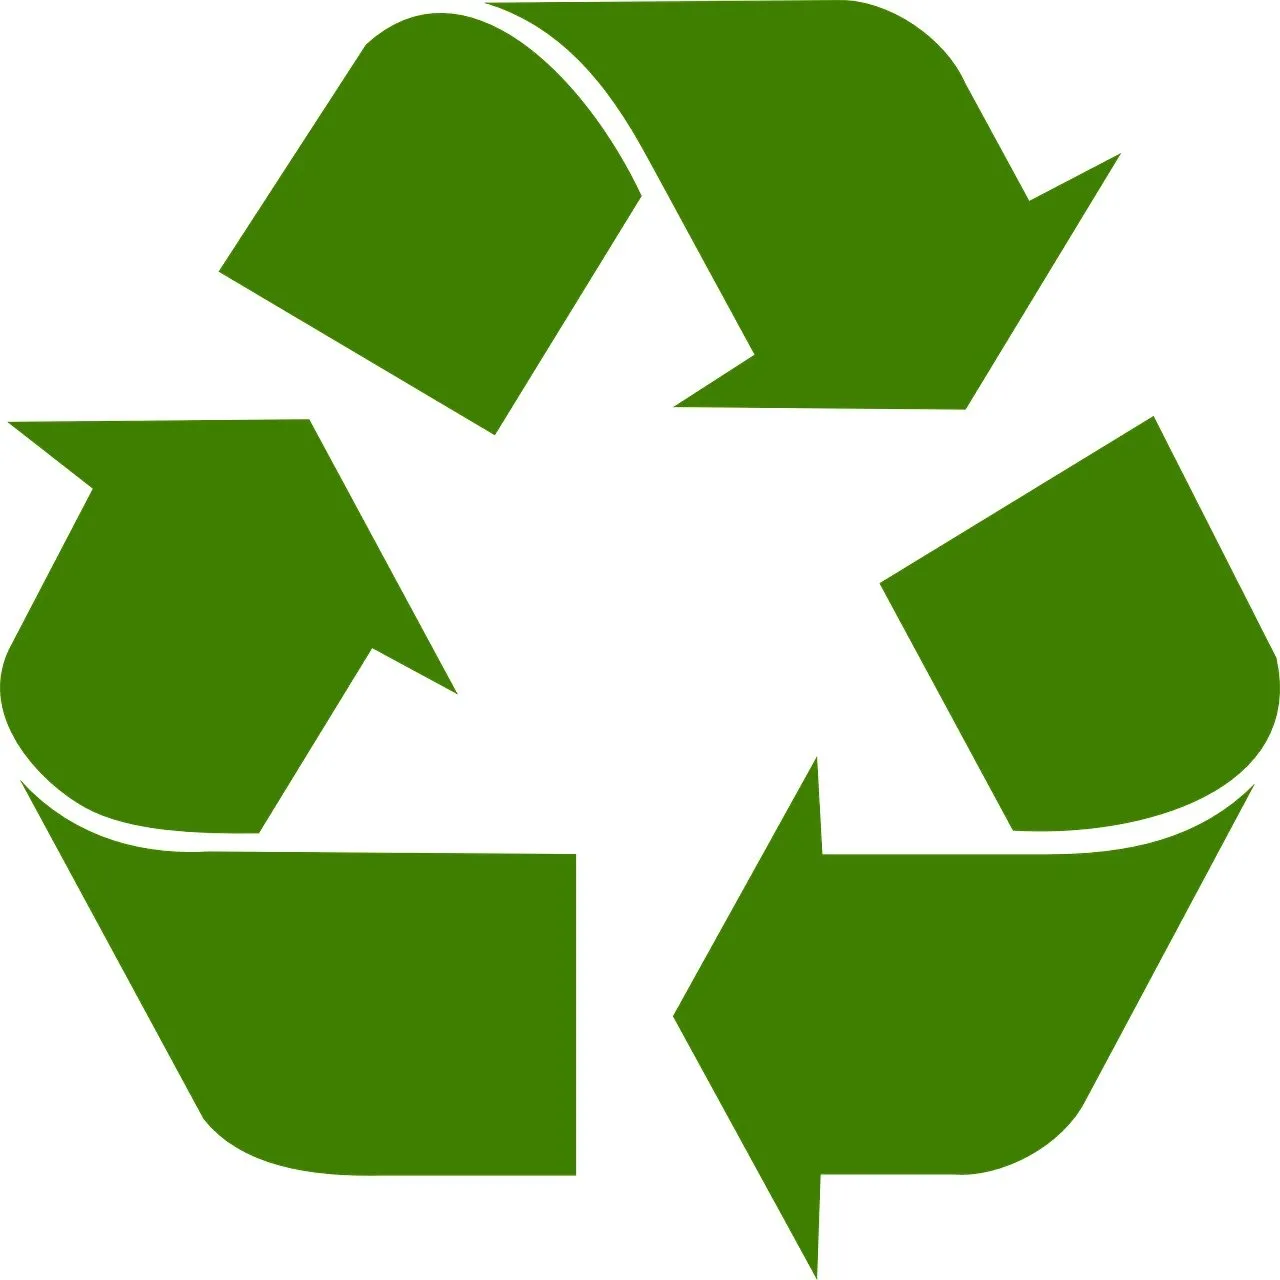 recykling opakowań w pigułce, surowce wtórne, przetwórstwo surowców wtórnych, zero waste, obieg zamknięty, symbol recyklingu